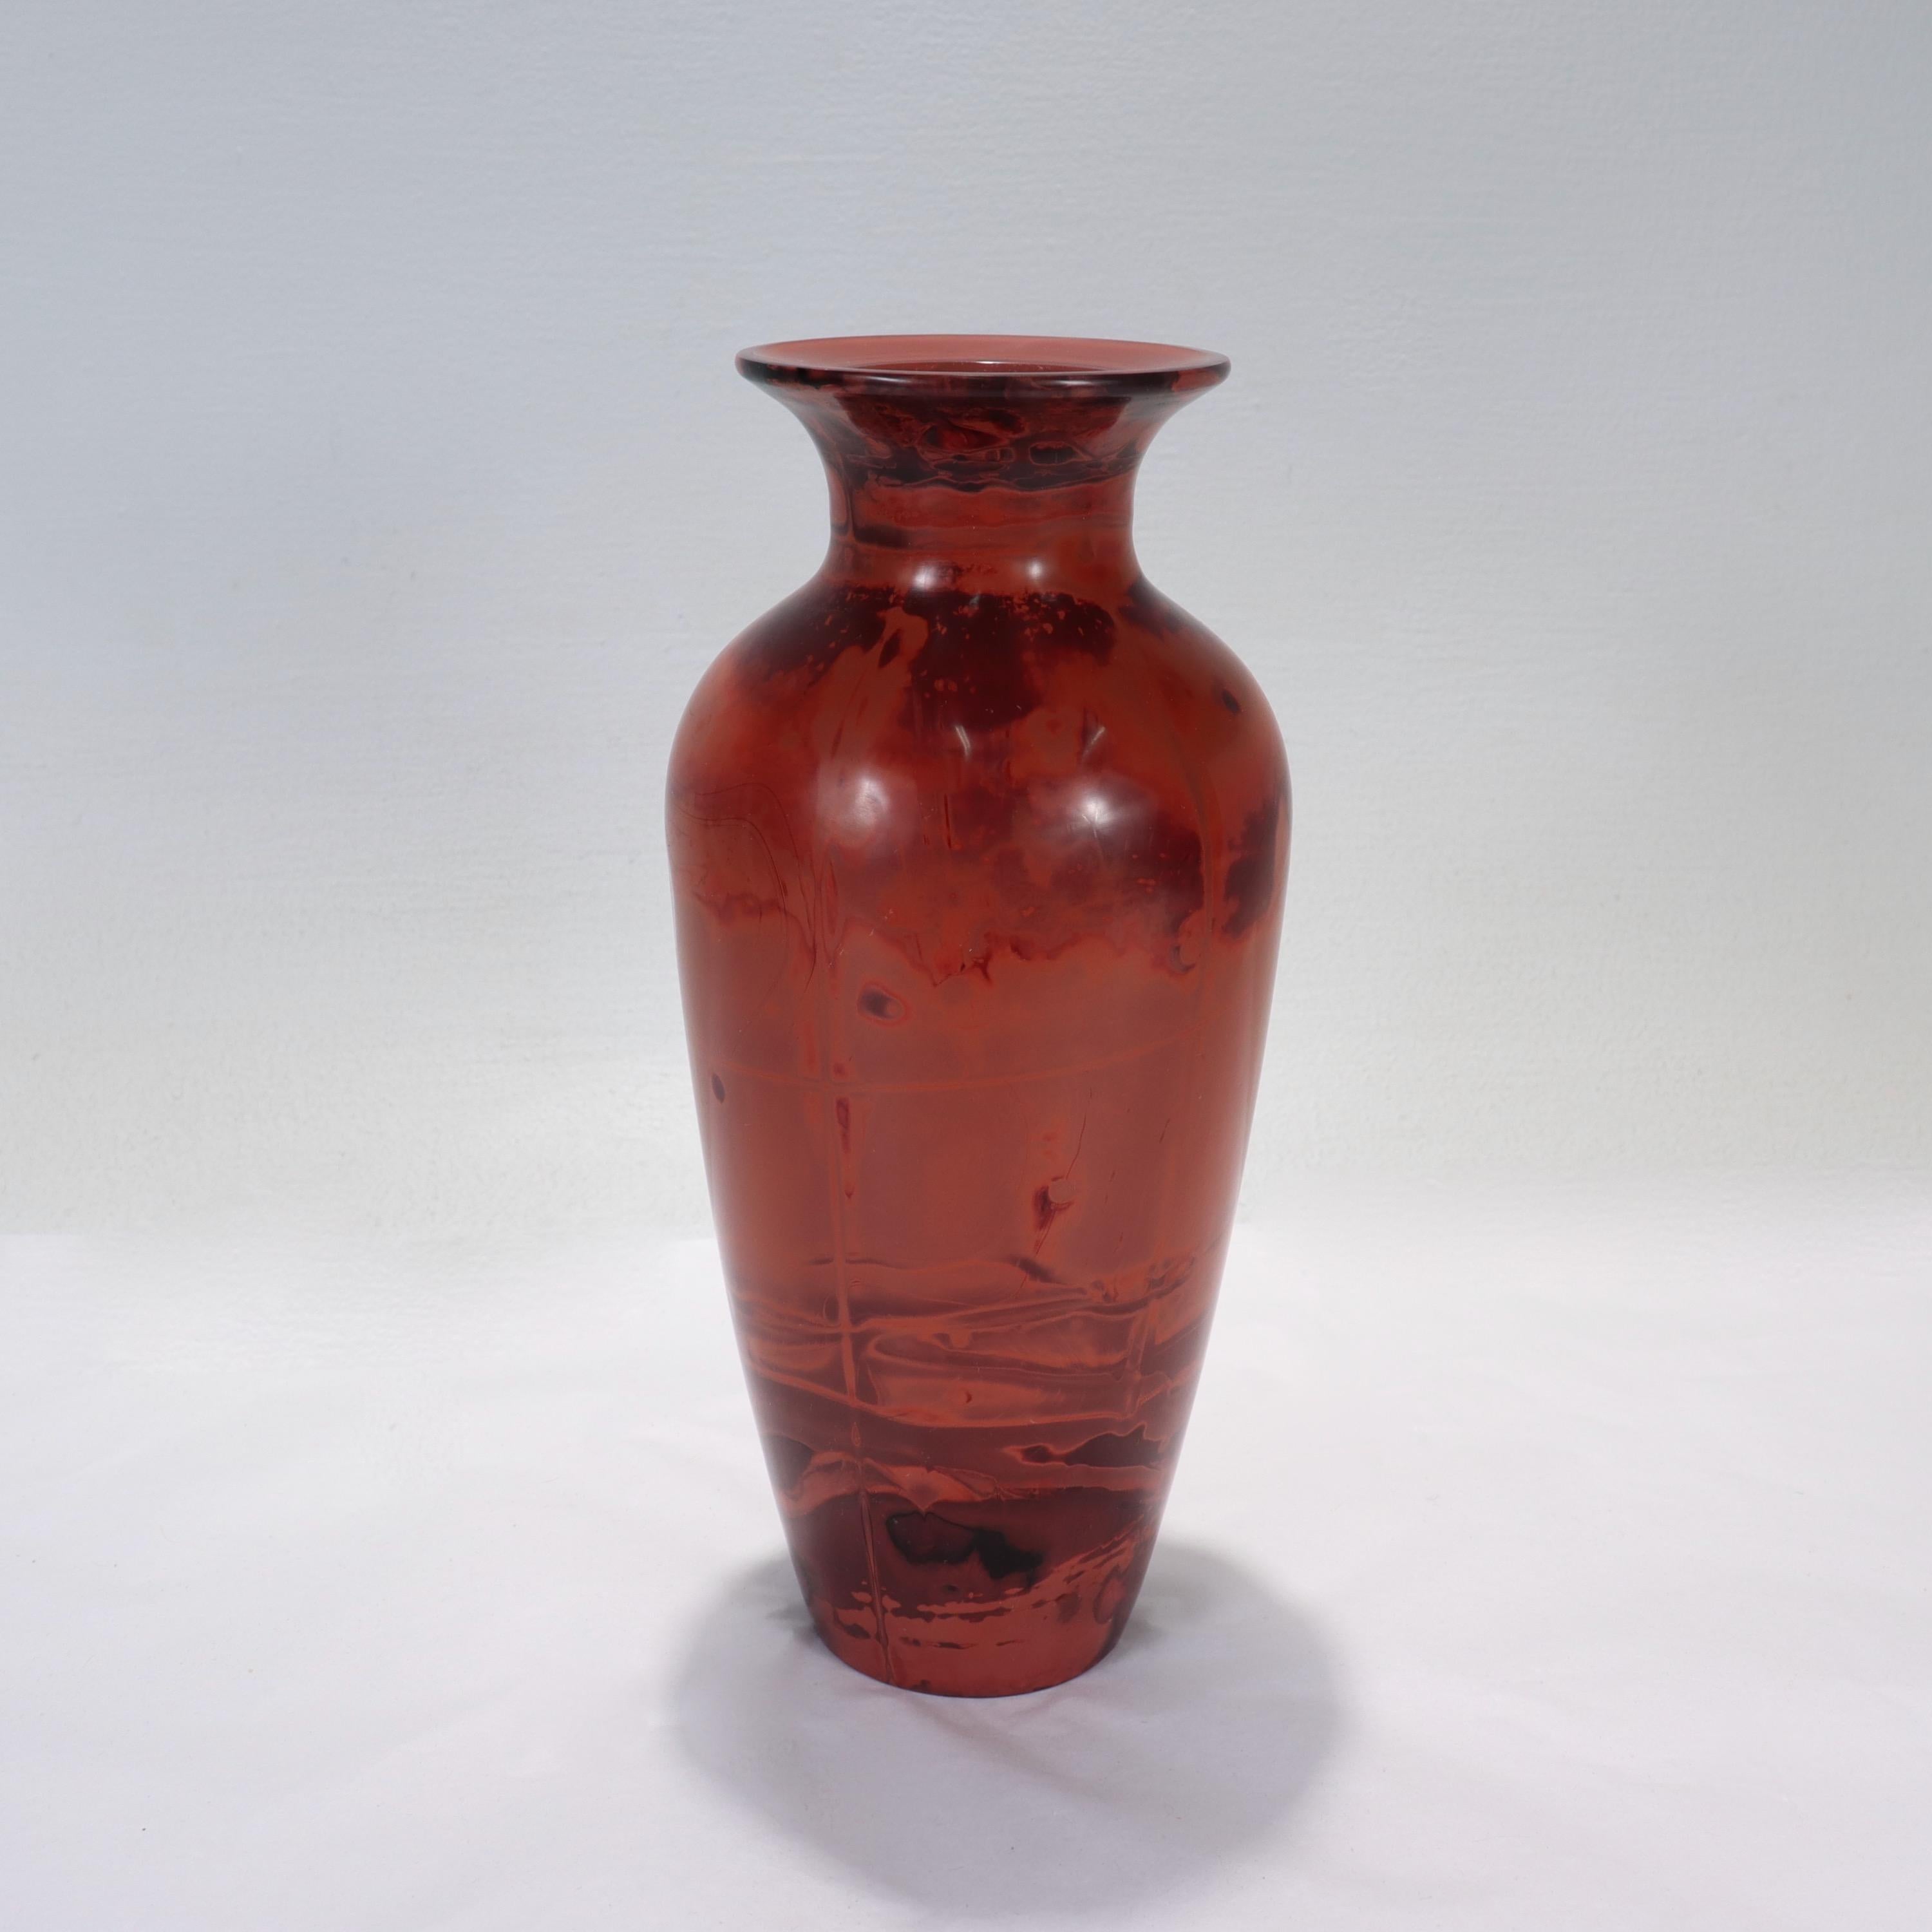 Eine schöne chinesische Vase aus Peking-Glas.

Hergestellt, um Realgar (雄黃) zu imitieren, ein Mineral, das in der traditionellen chinesischen Medizin weit verbreitet ist.

Der Sockel ist mit einem polierten Zapfen versehen.

Einfach eine schöne alte